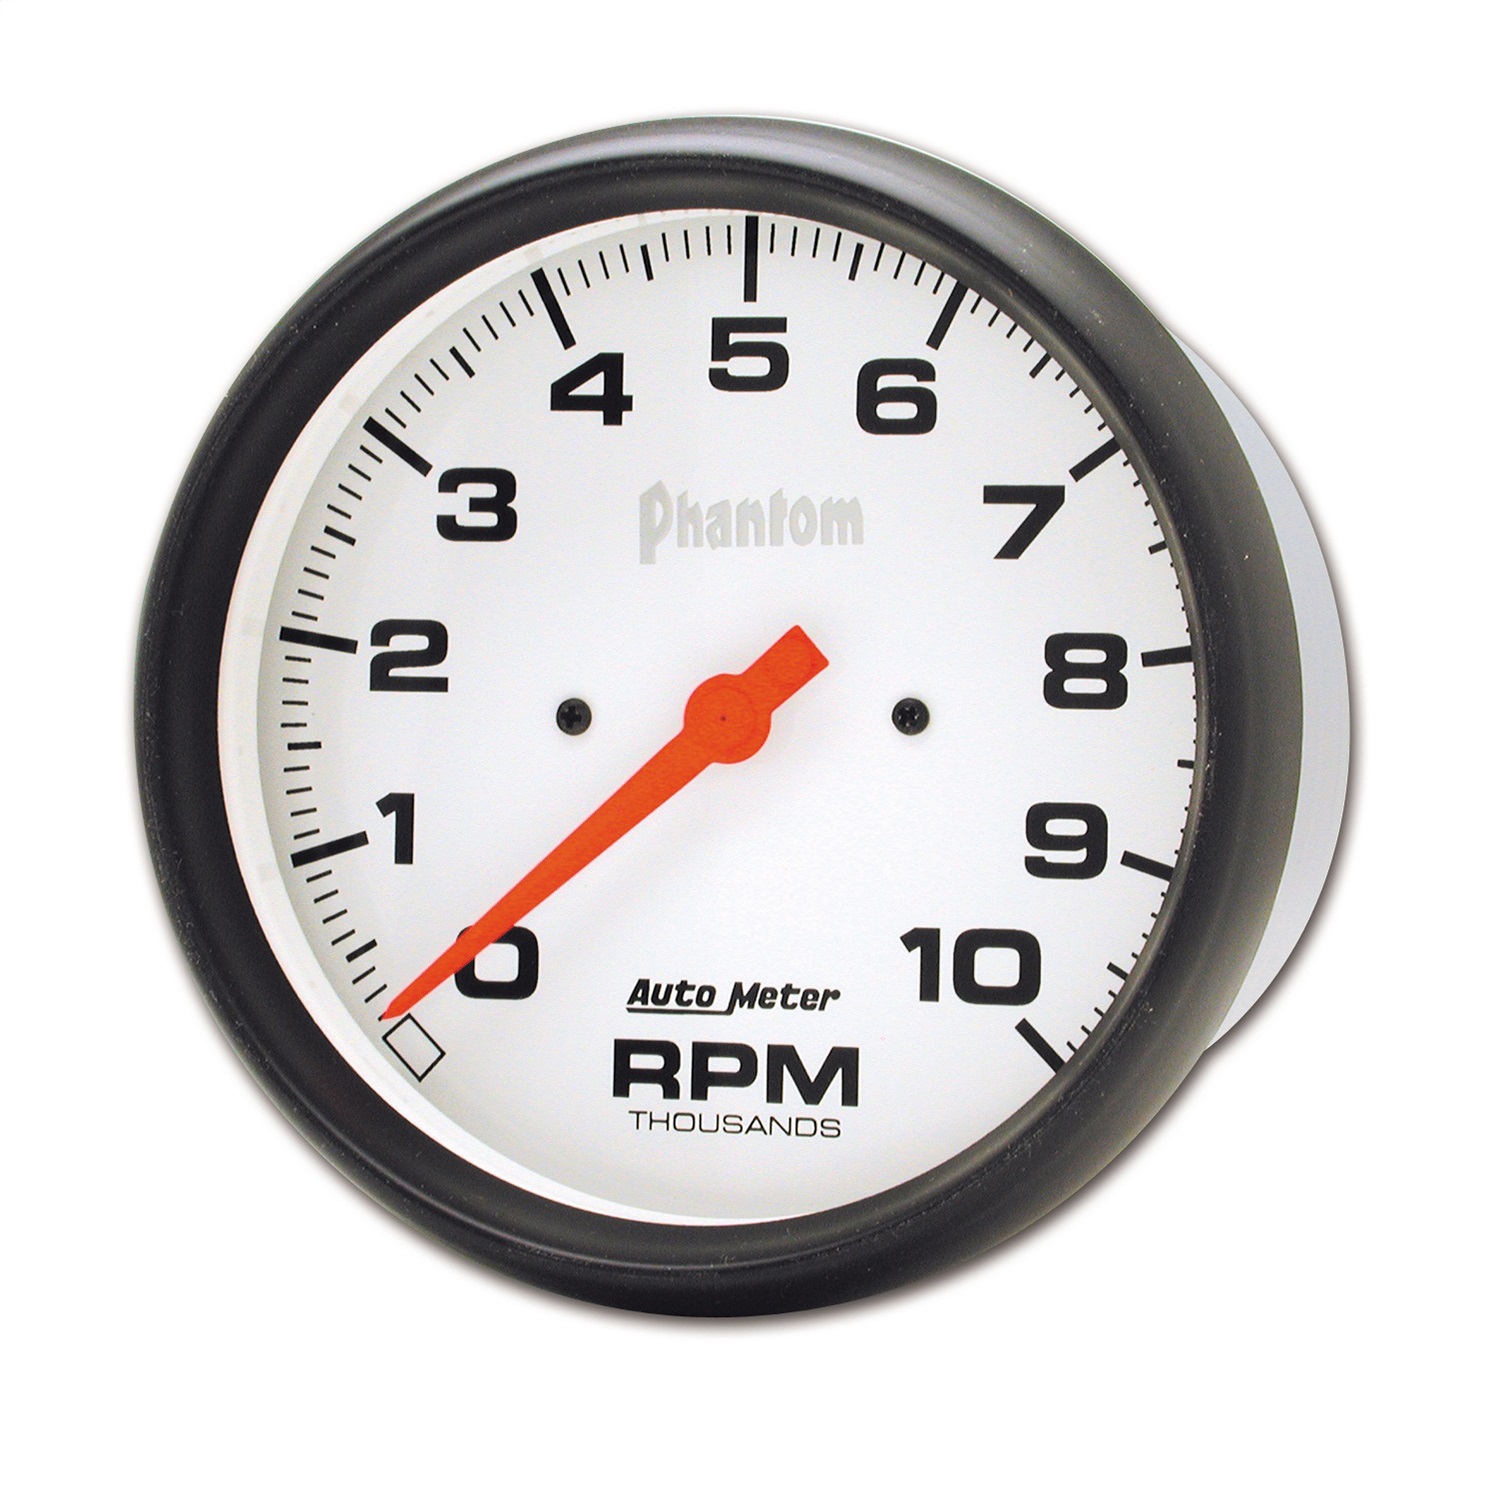 Auto Meter Auto Meter 5898 Phantom; In-Dash Electric Tachometer